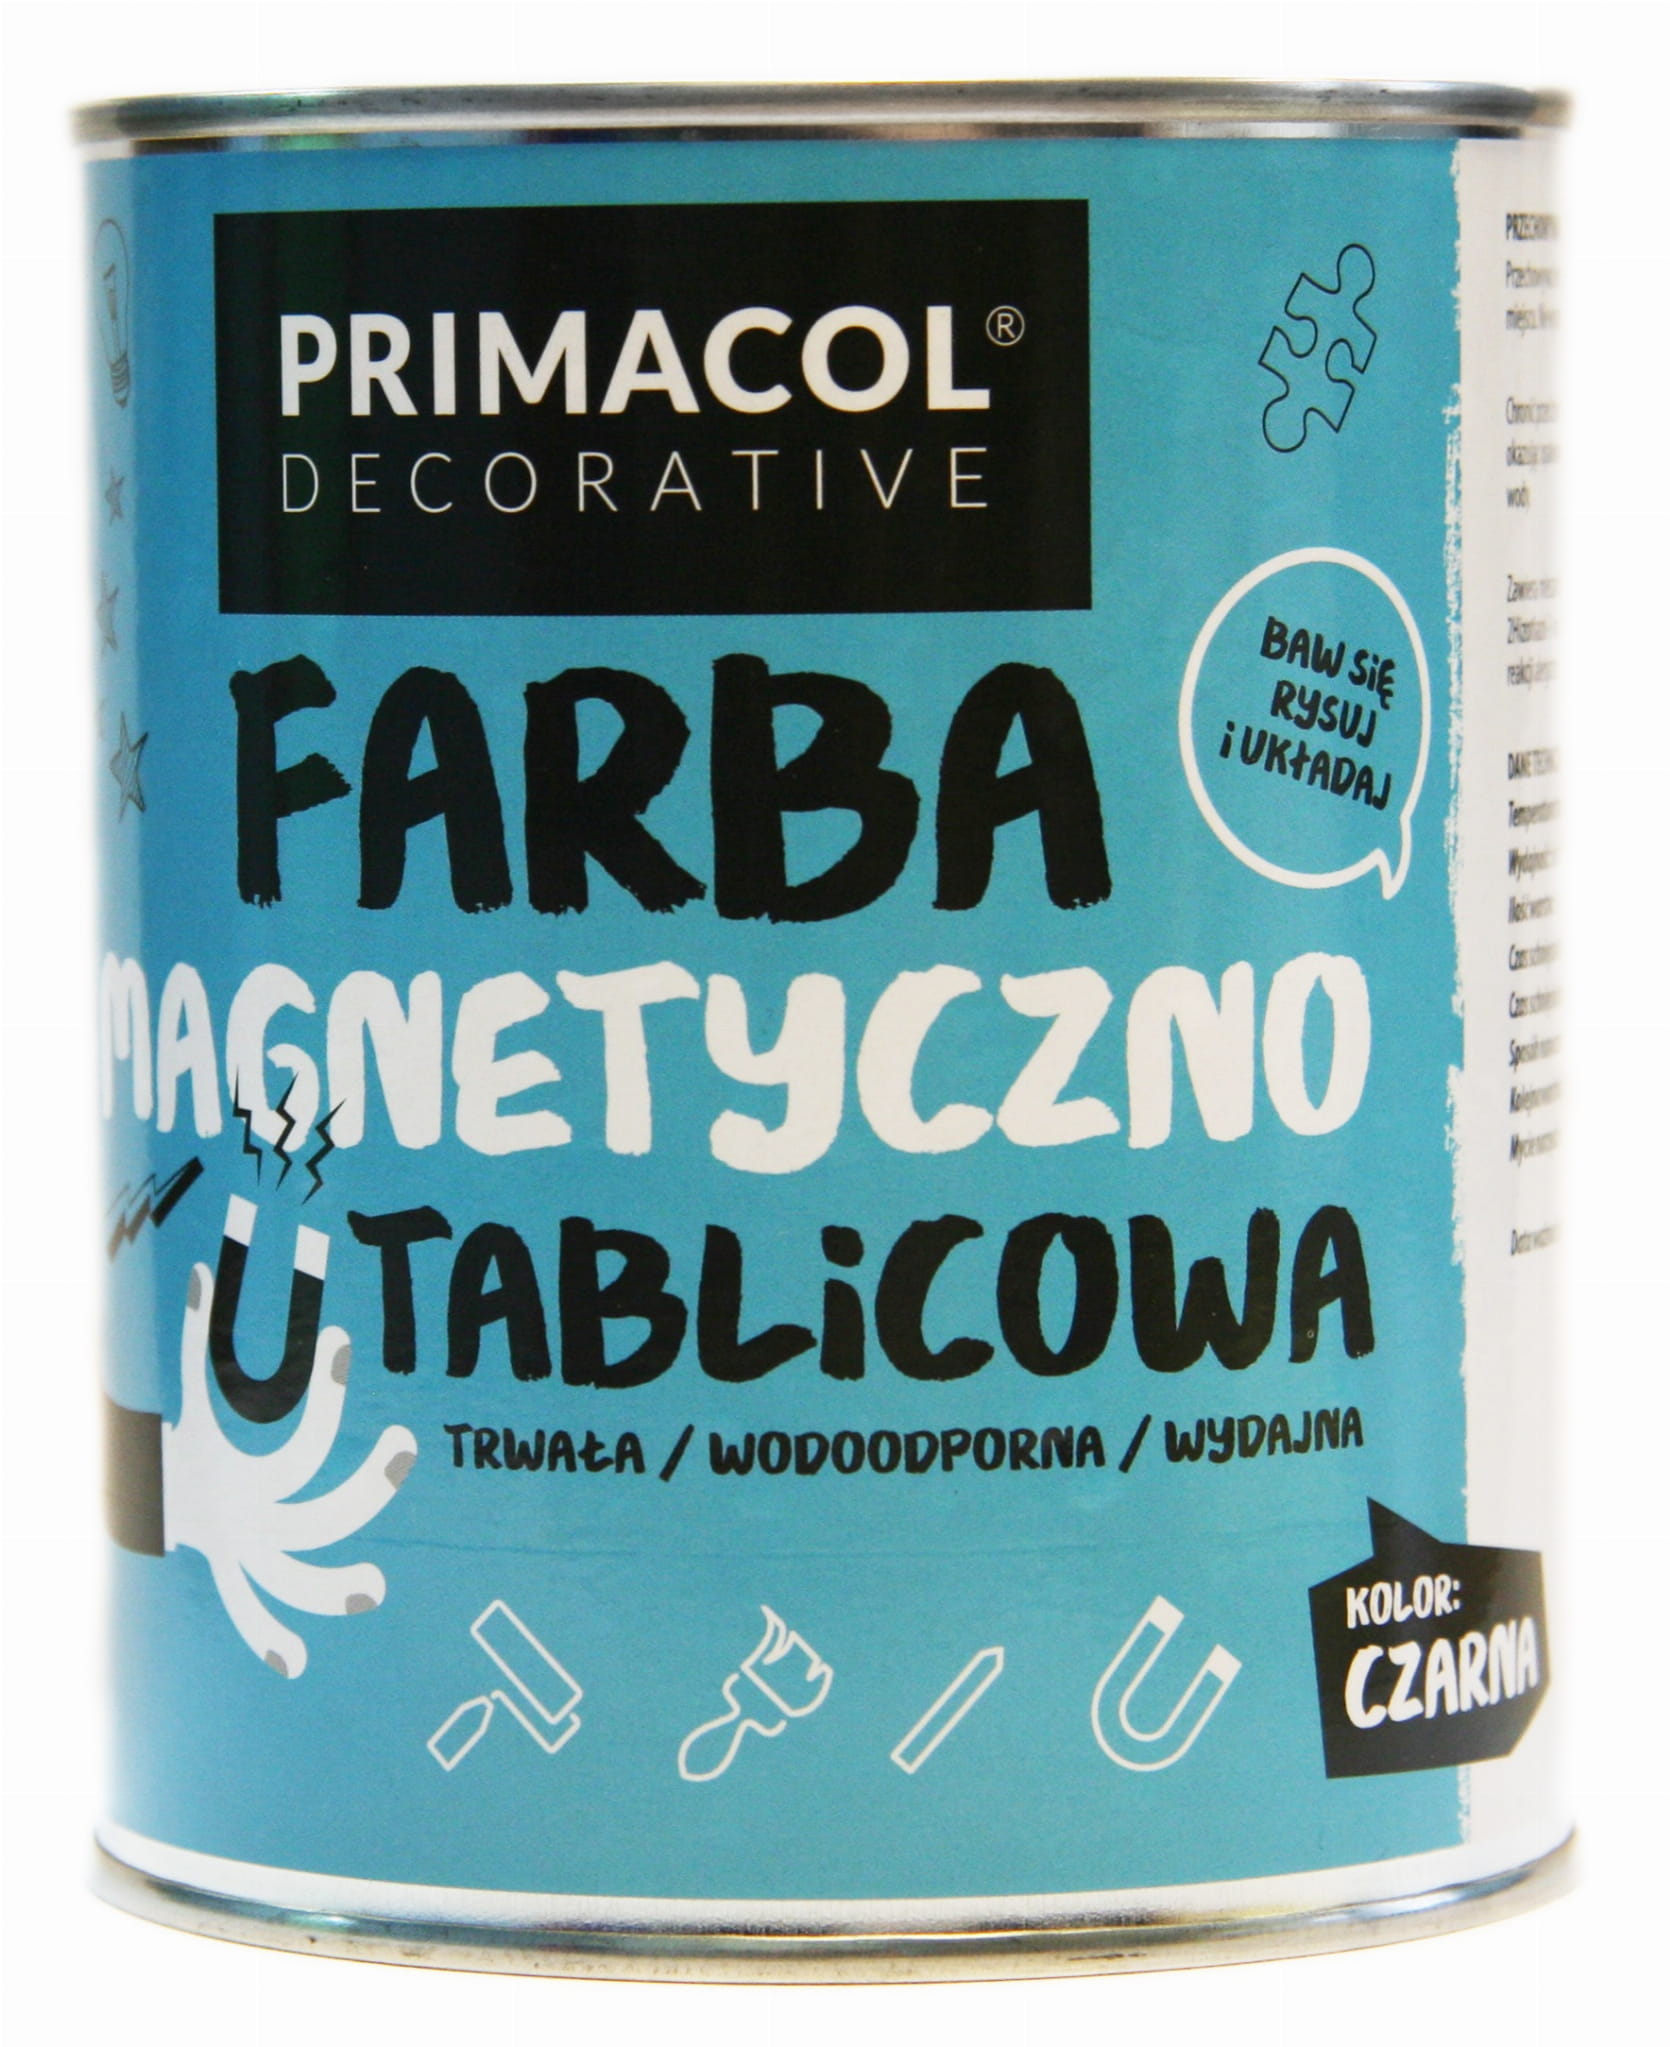 Farba Magnetyczno Tablicowa Primacol 750 ml